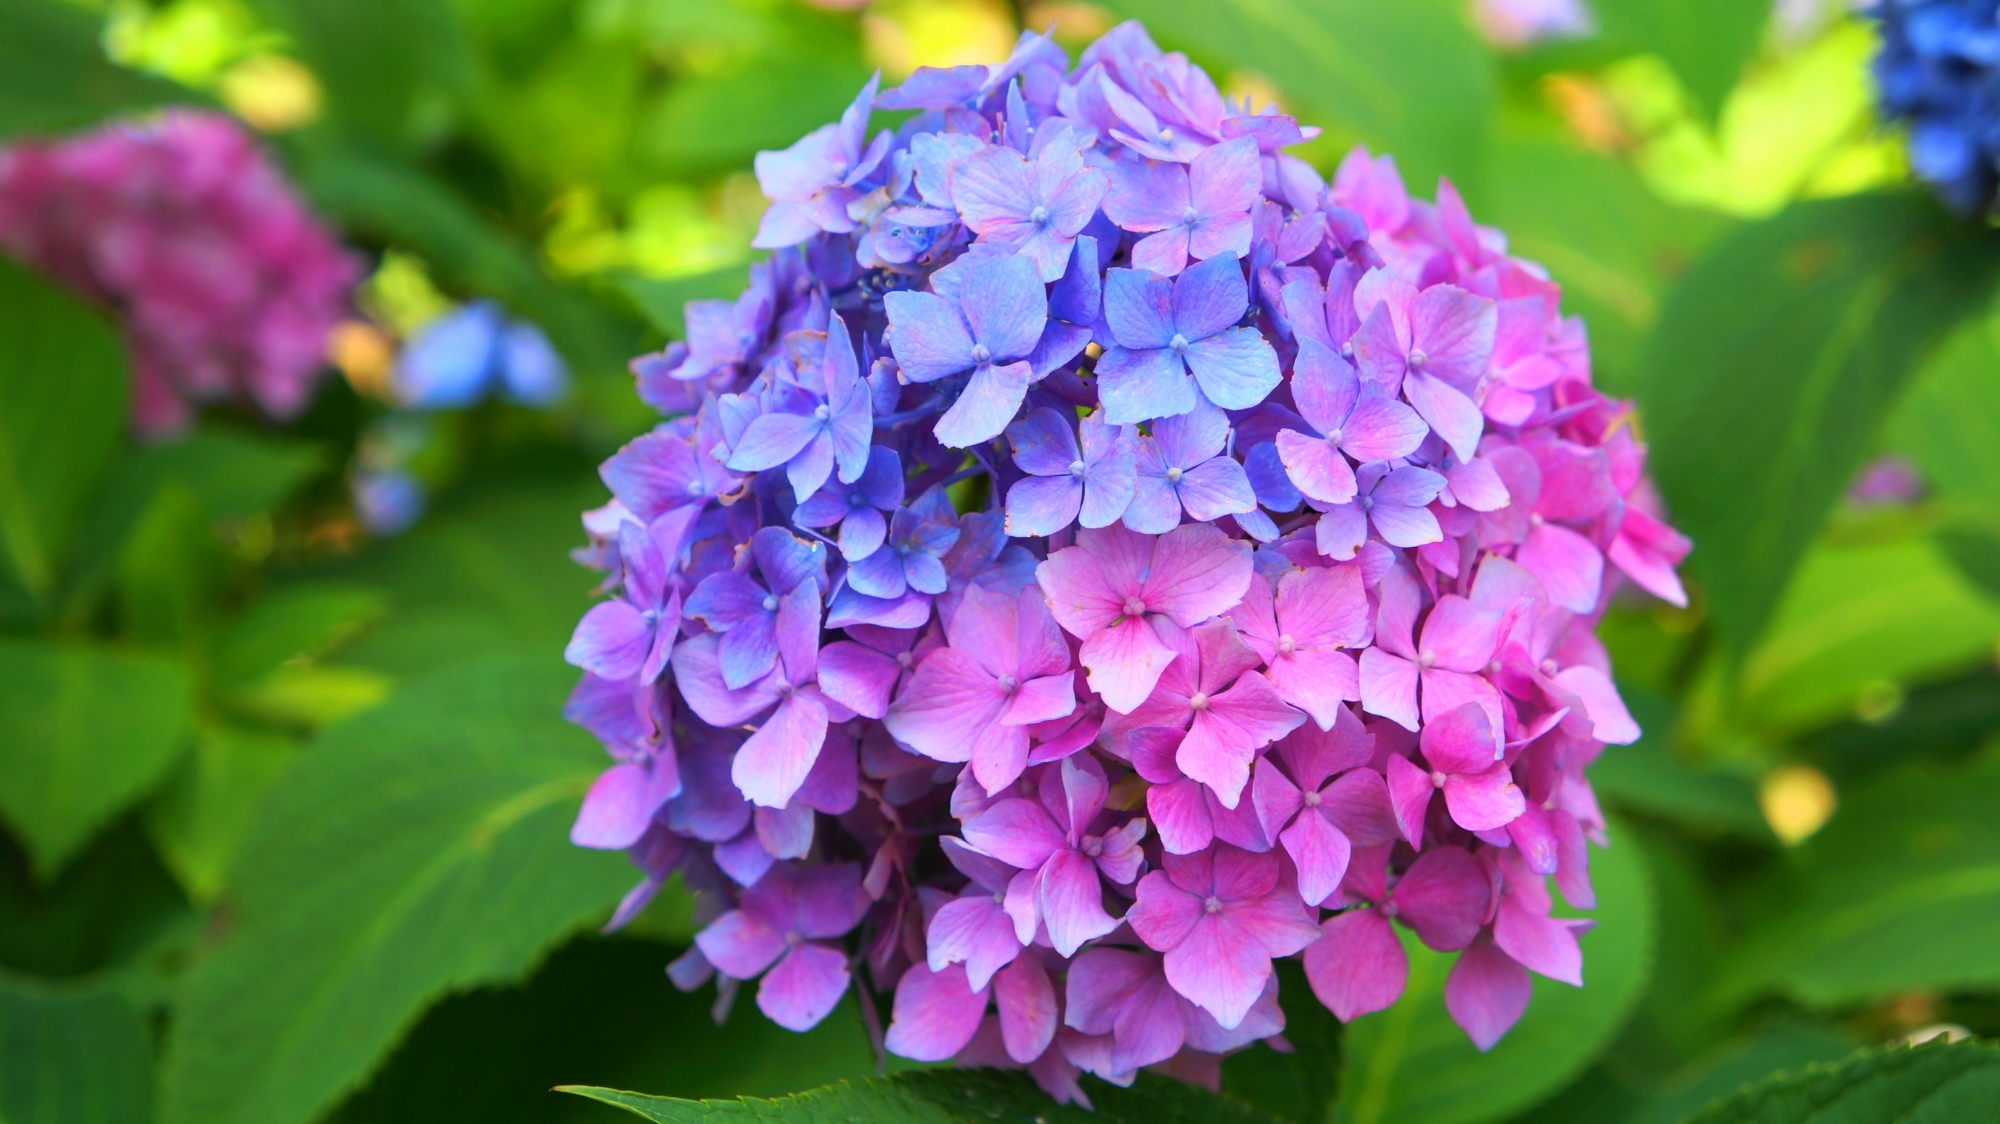 あじさい寺の三室戸寺の素晴らしい紫陽花と初夏の彩り